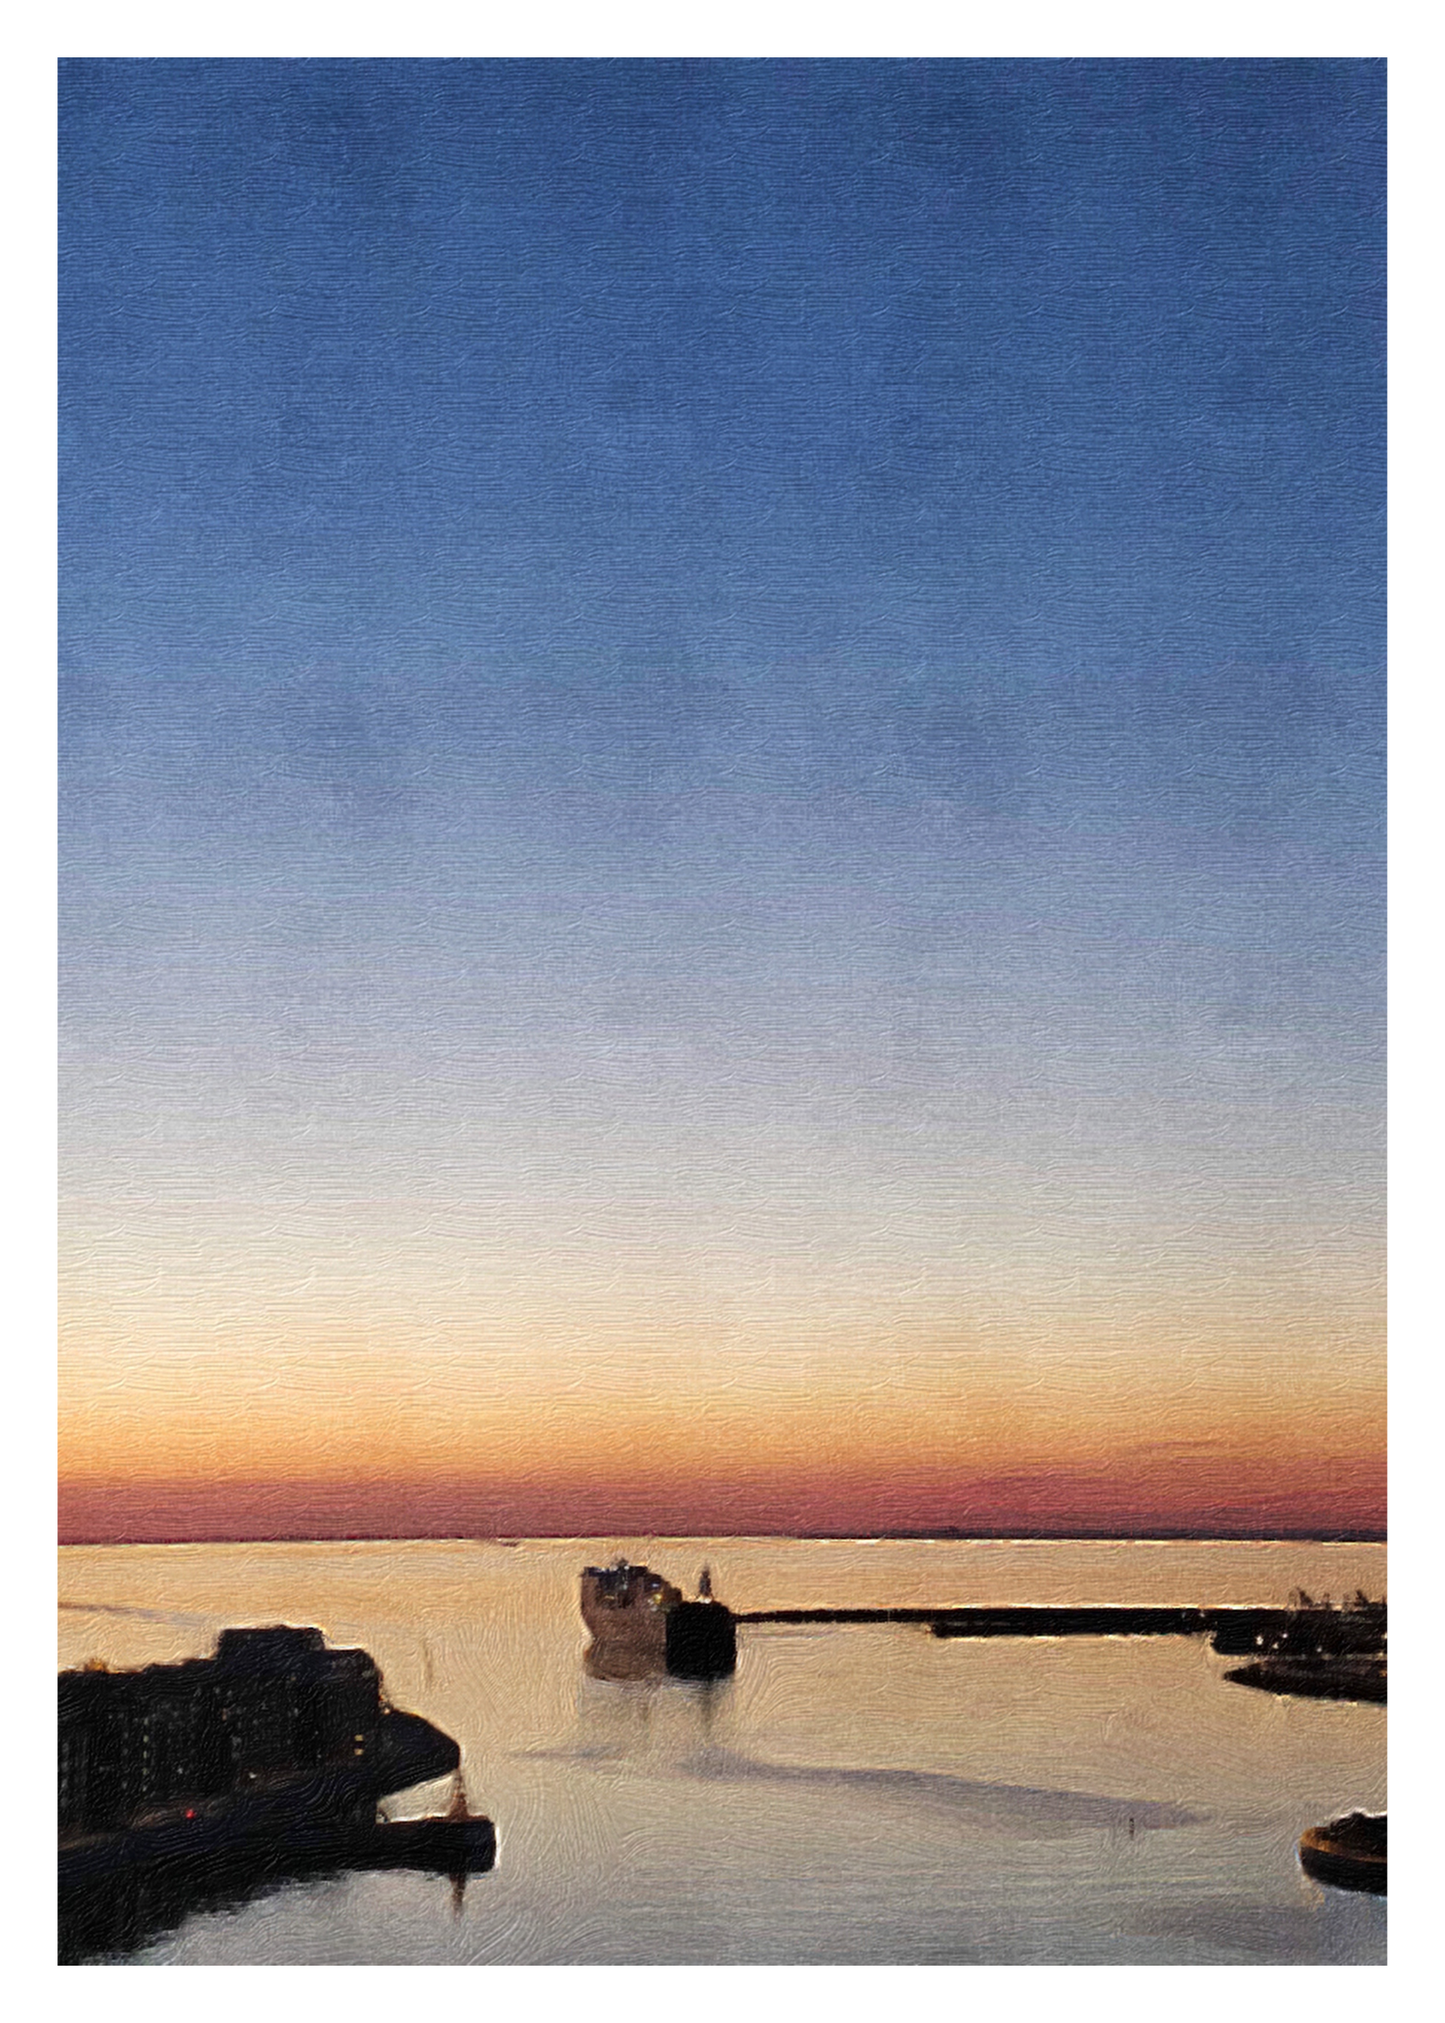 Solnedgång över Öresund med varma orange och blå toner och silhuett av fartyg som seglar ut från hamnen